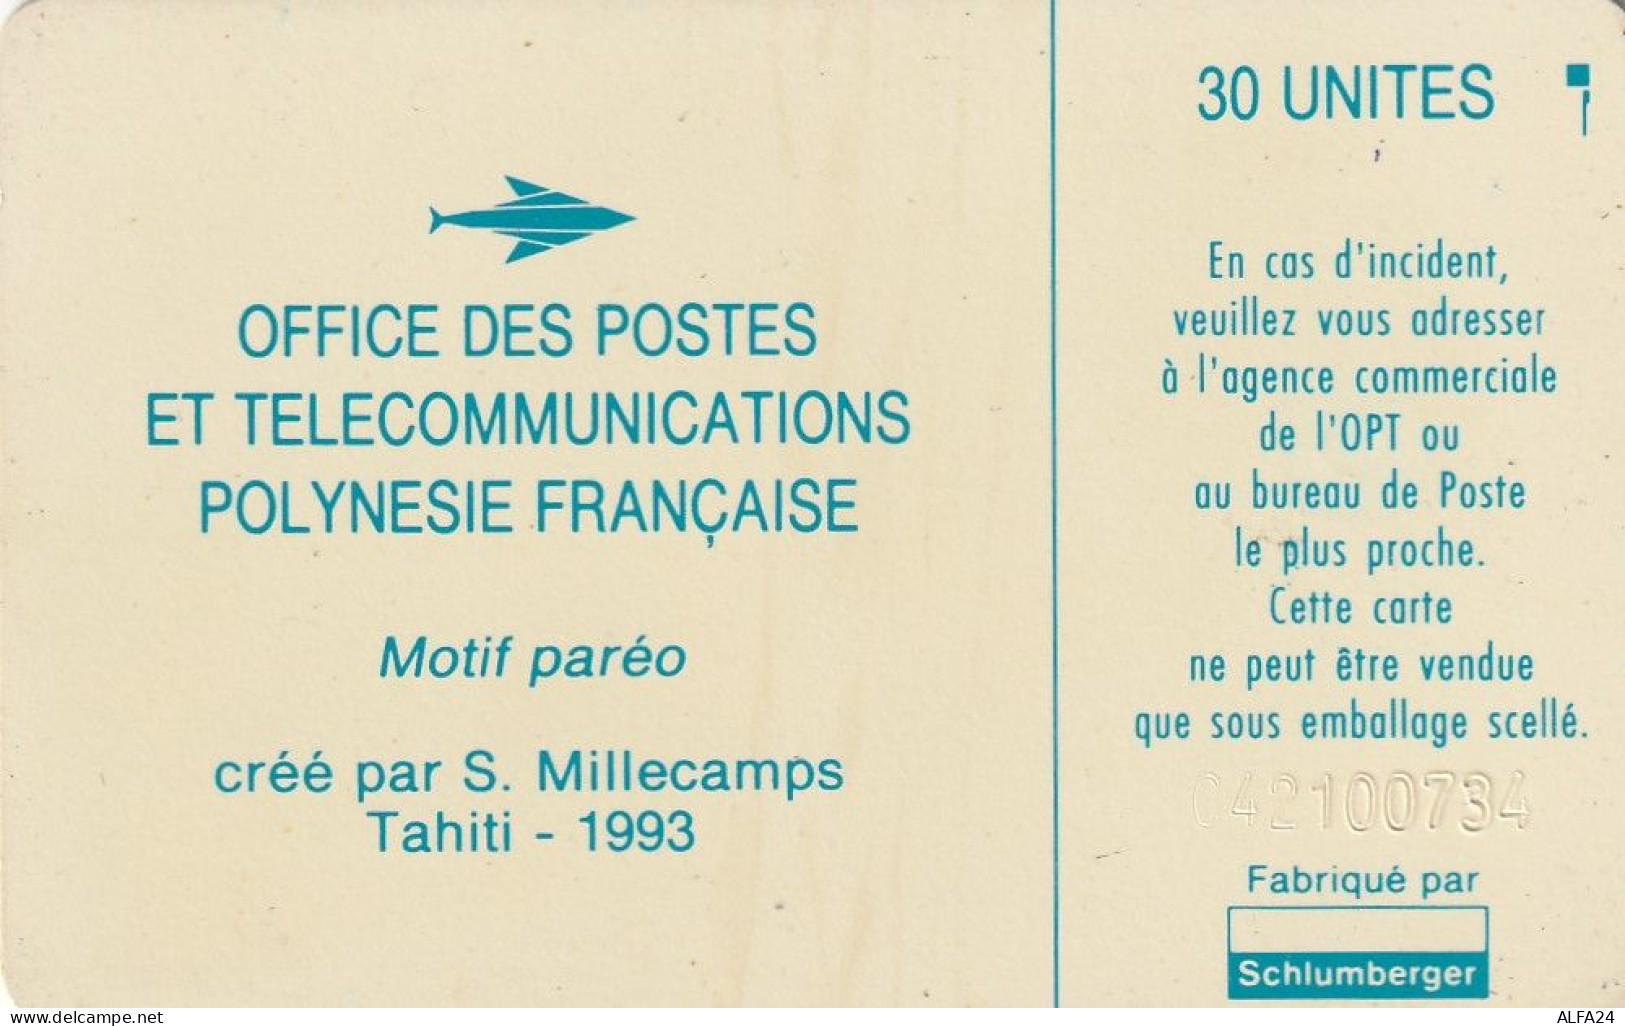 PHONE CARD POLINESIA FRANCESE  (E72.7.4 - Polynésie Française